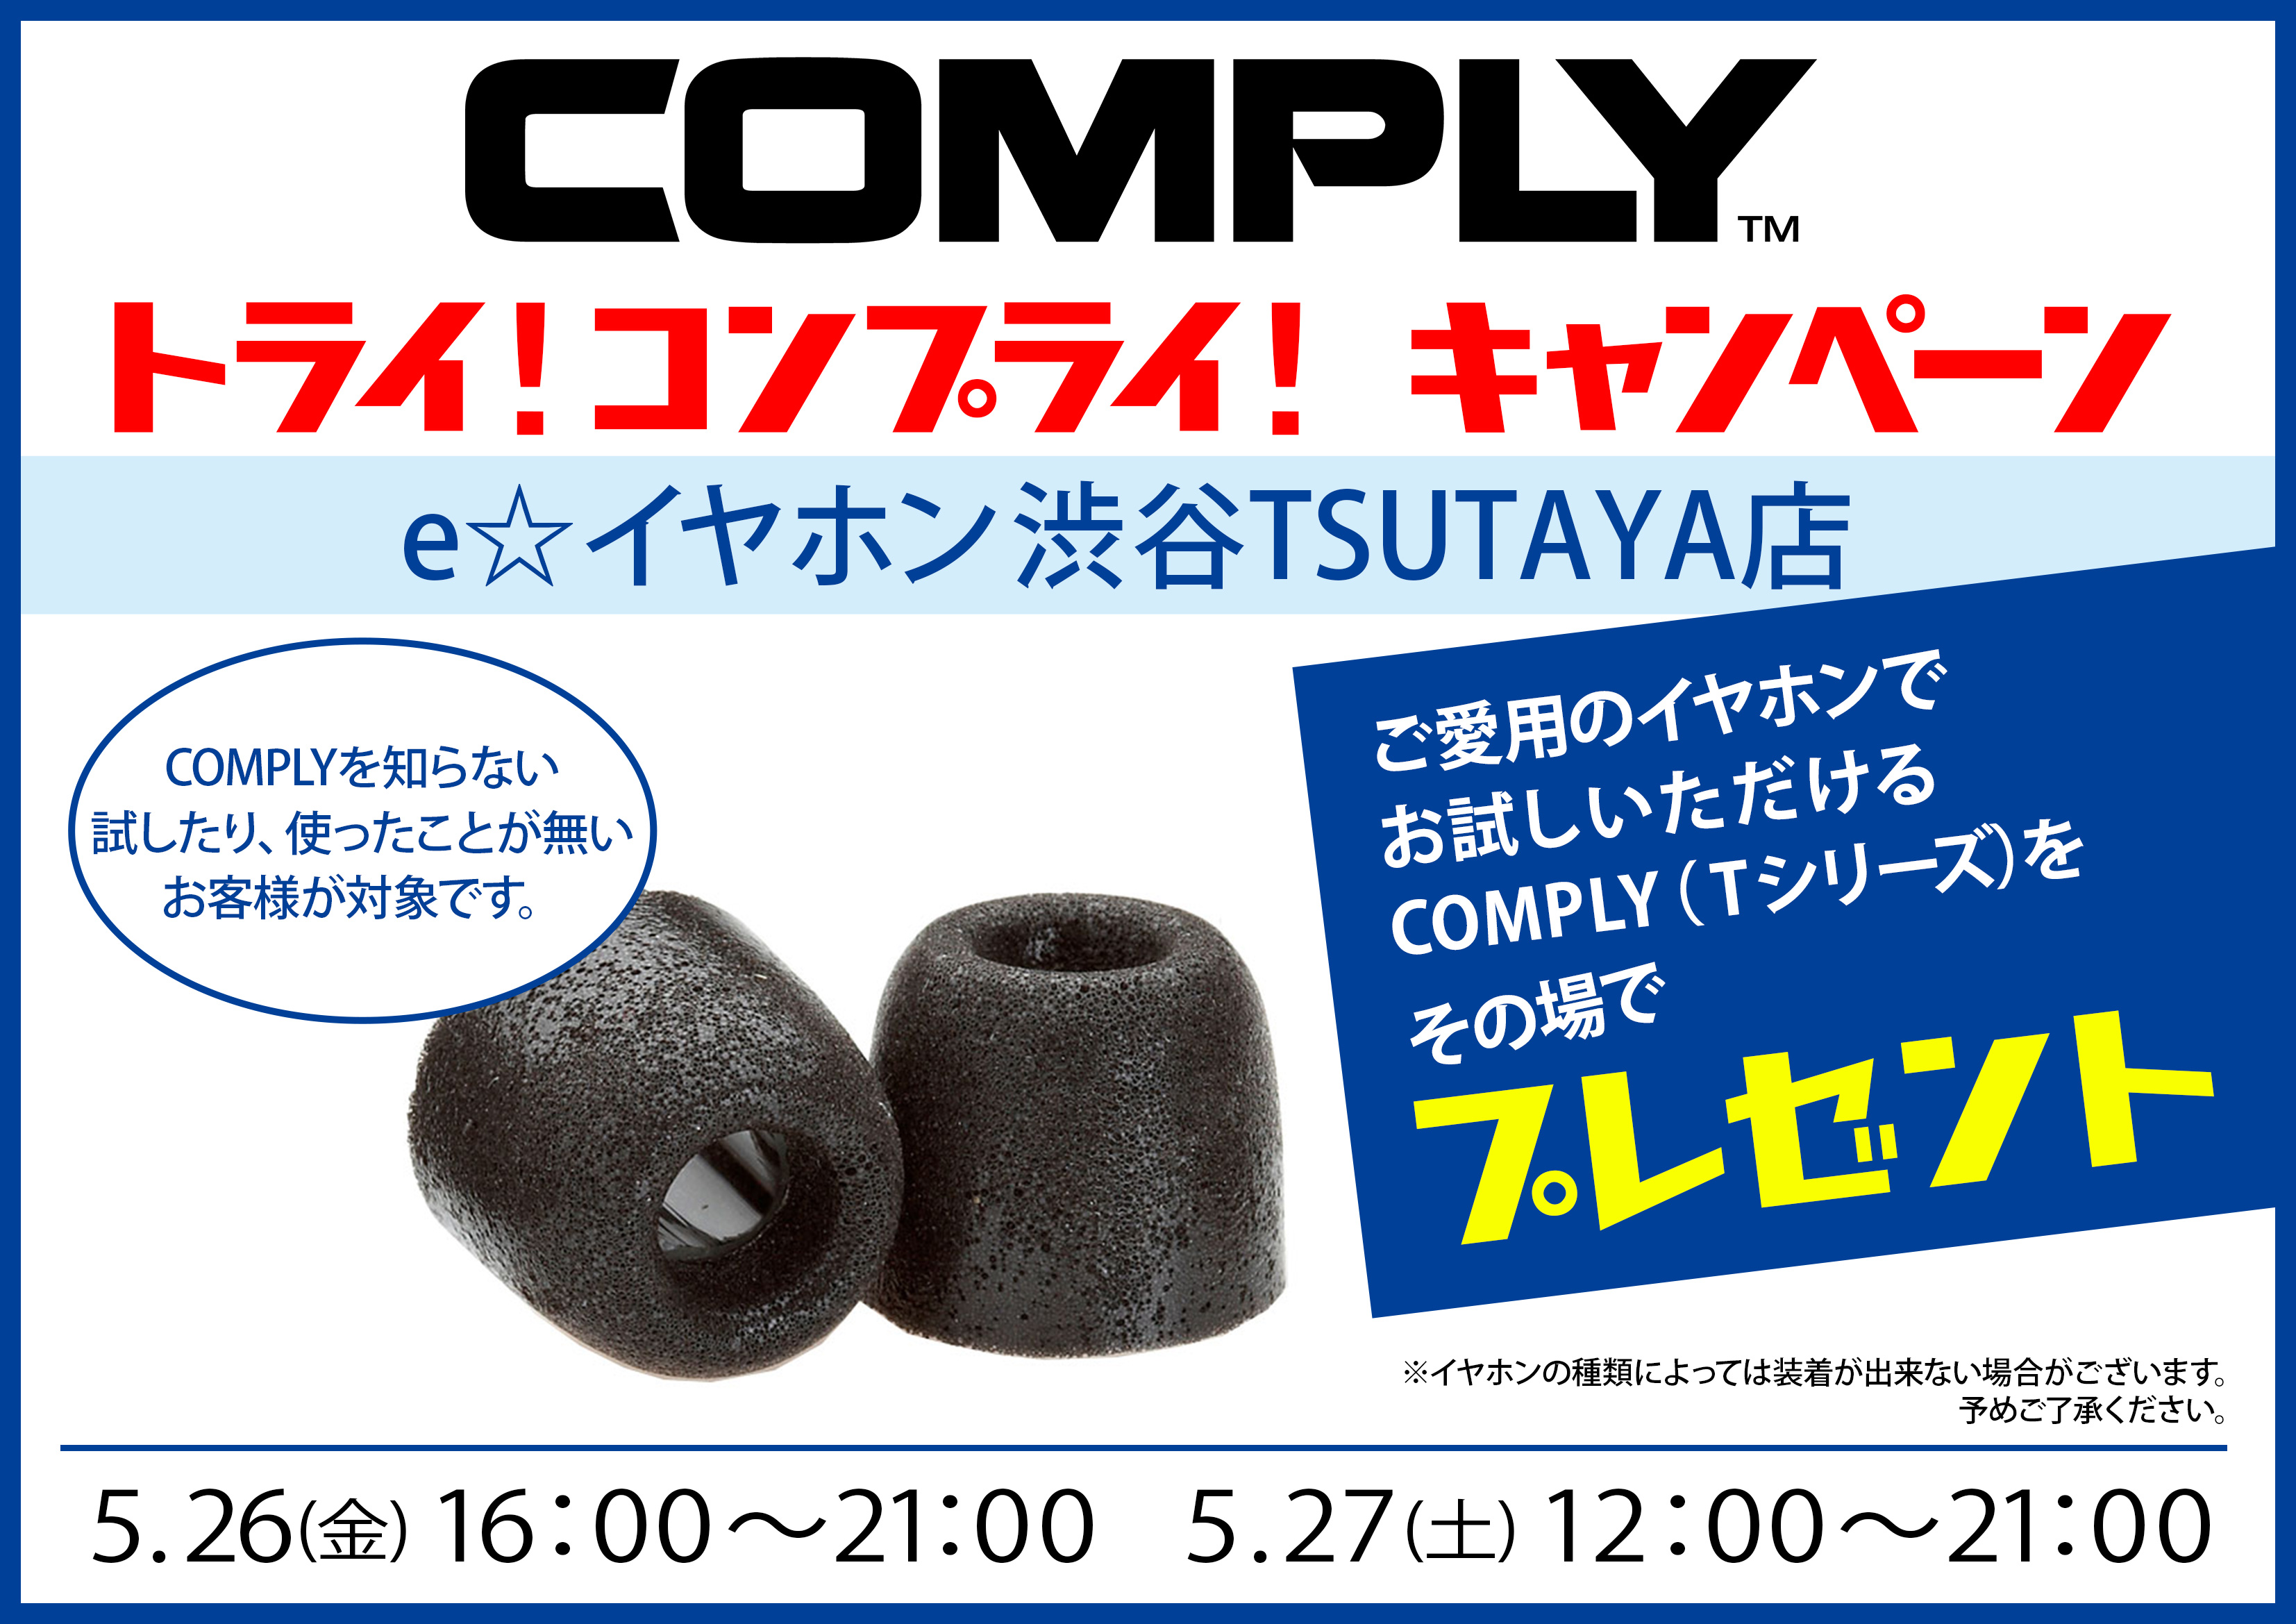 Shibuya Tsutaya店イベント Comply トライ コンプライ キャンペーン イヤホン ヘッドホン専門店eイヤホンのブログ